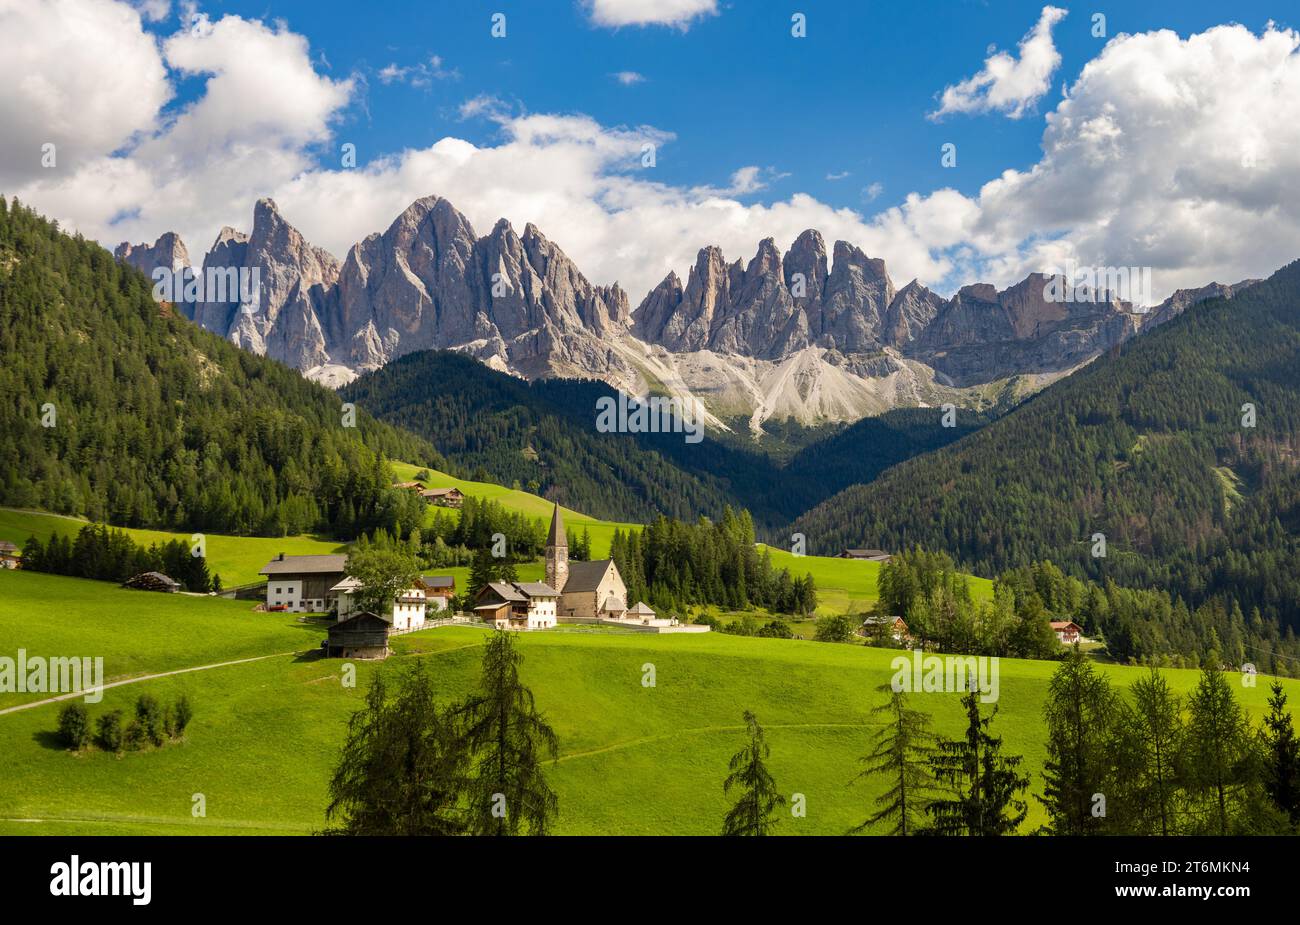 View of chiesa di Santa Maddalena, Dolomites, Italy Stock Photo